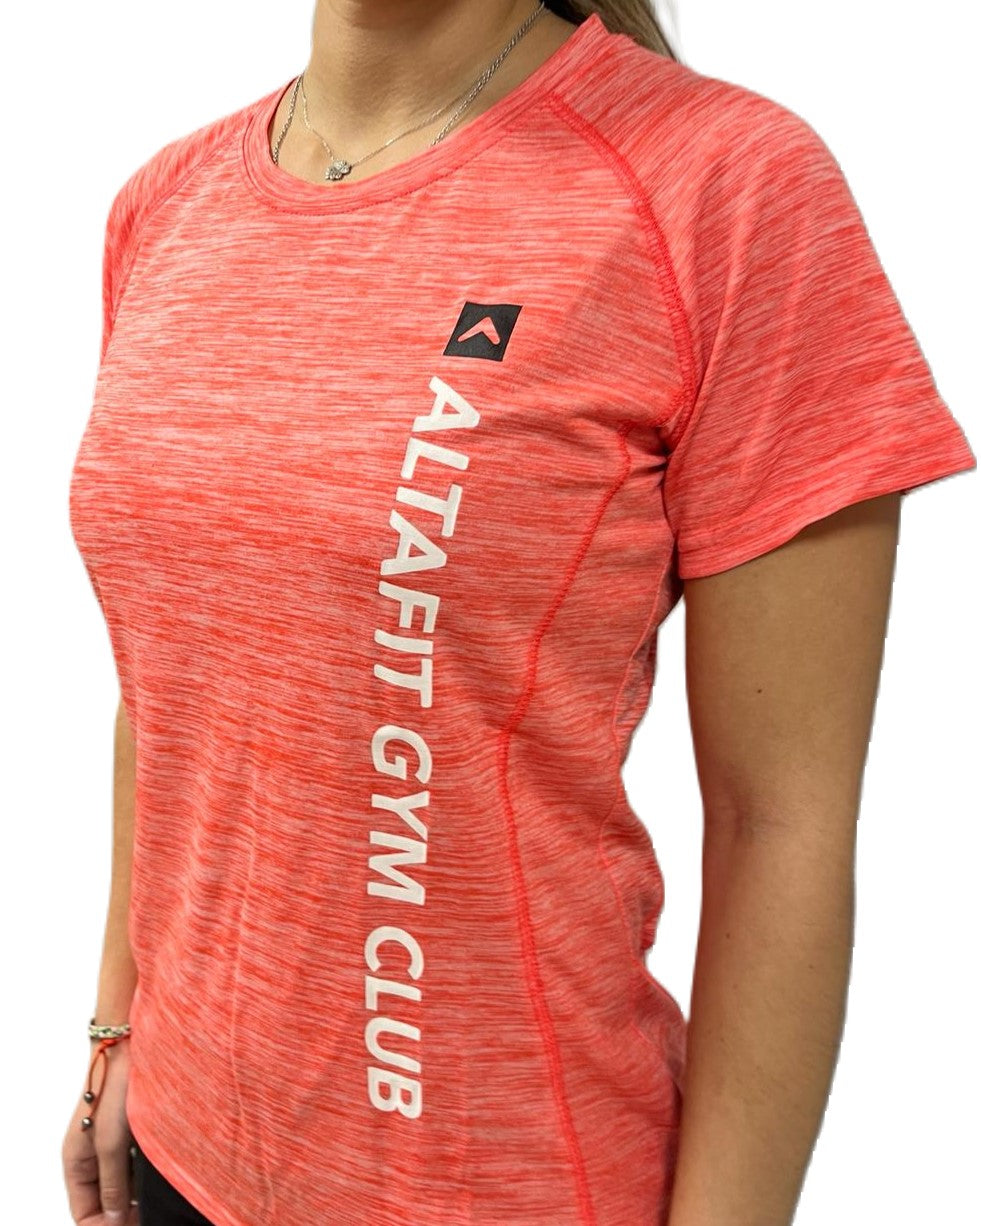 Camiseta femenina con mangas ALTAFIT coral